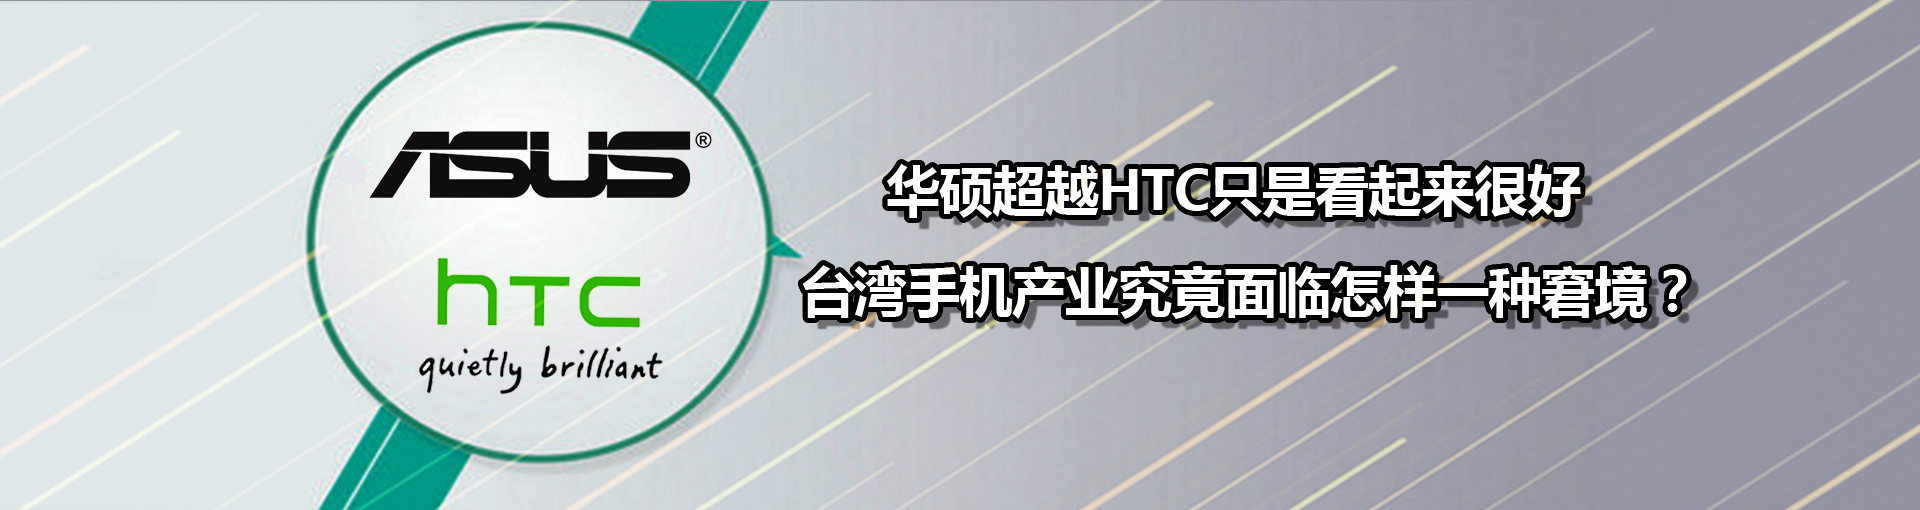 华硕超越HTC只是看起来很好 台湾手机产业究竟面临怎样一种窘境？